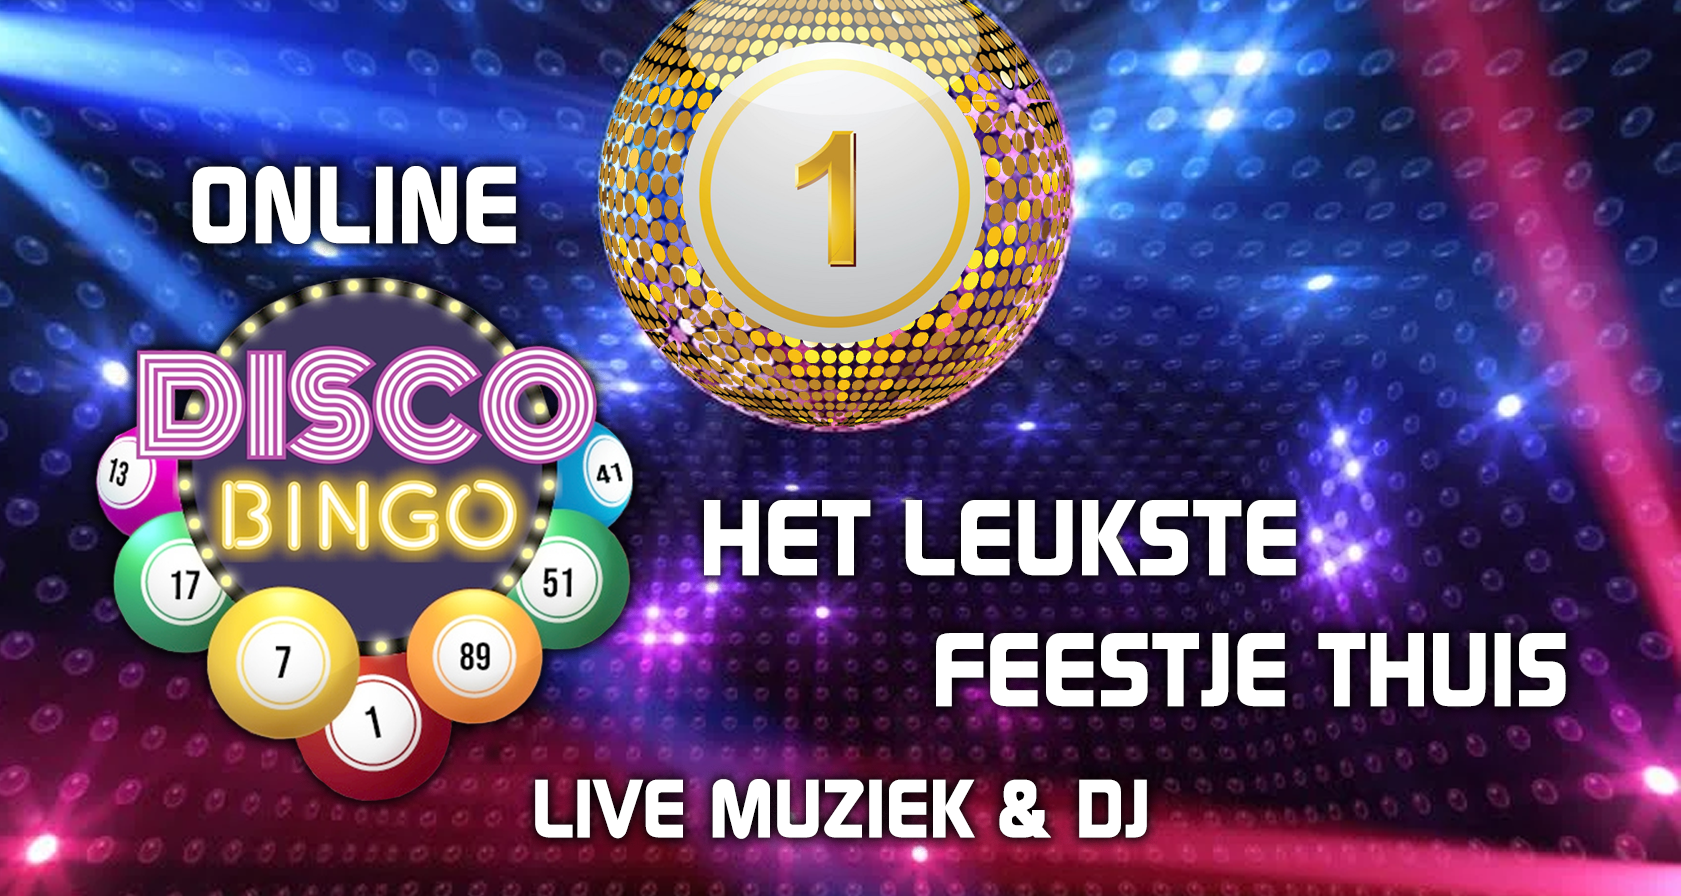 Teamuitje Noordwijk aan Zee: Muziek bingo online live DJ